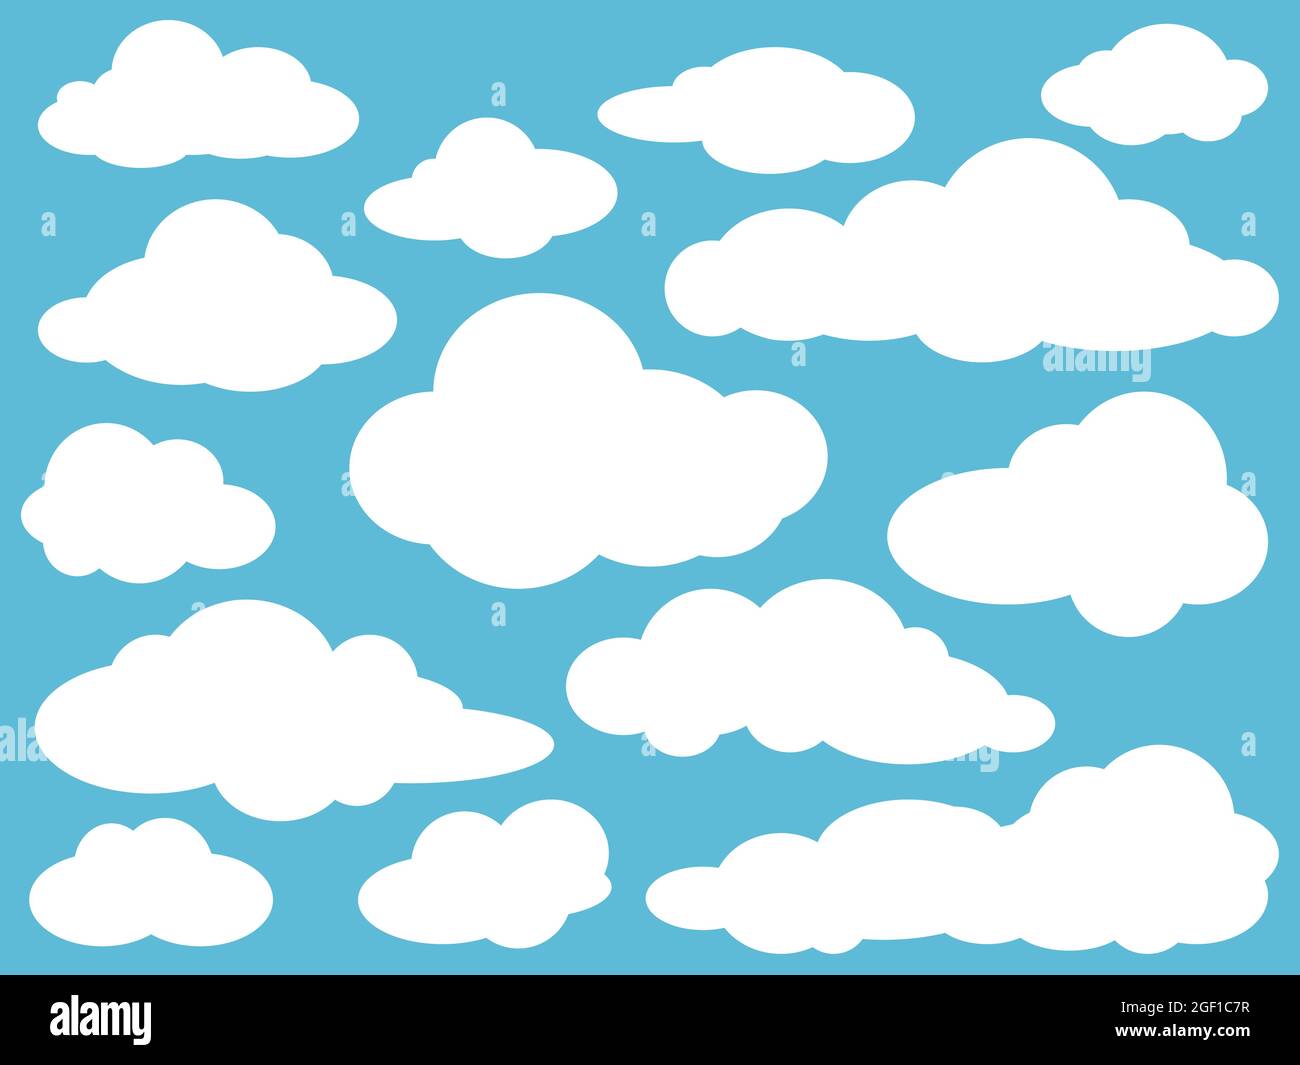 Weiße Wolken Sammlung auf blauem Hintergrund. Bannersymbole Gesetzt. Vektorgrafik. Designelemente in flacher Optik Stock Vektor